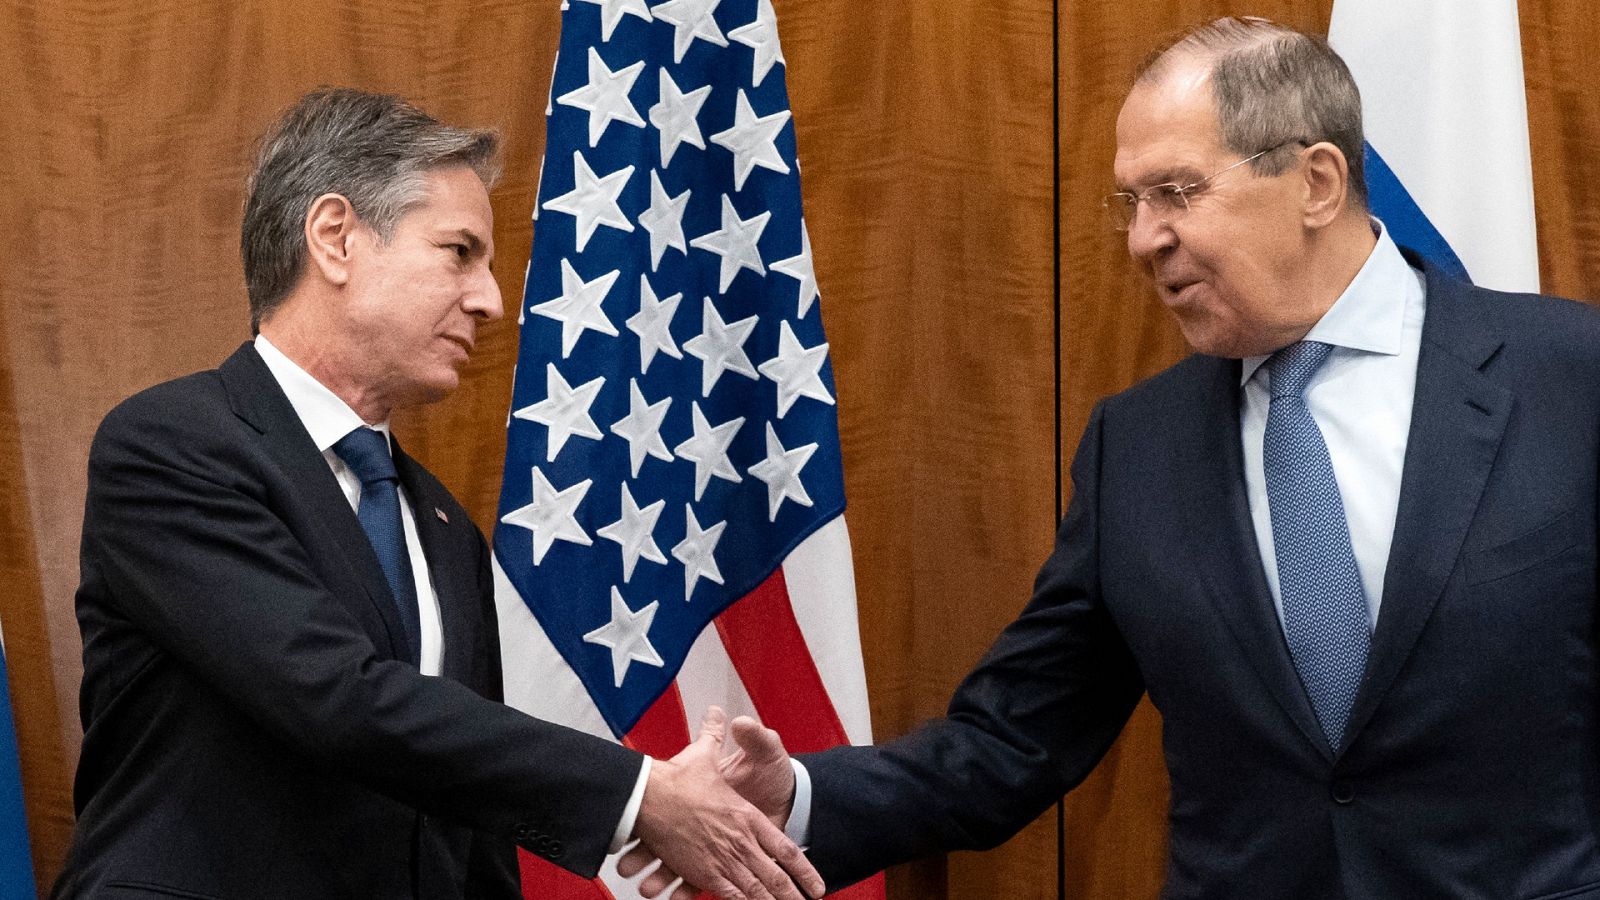 14 Horas Fin de Semana - EE.UU y Rusia acuerdan continuar con la vía diplomática para llegar a una solución  - Escuchar ahora